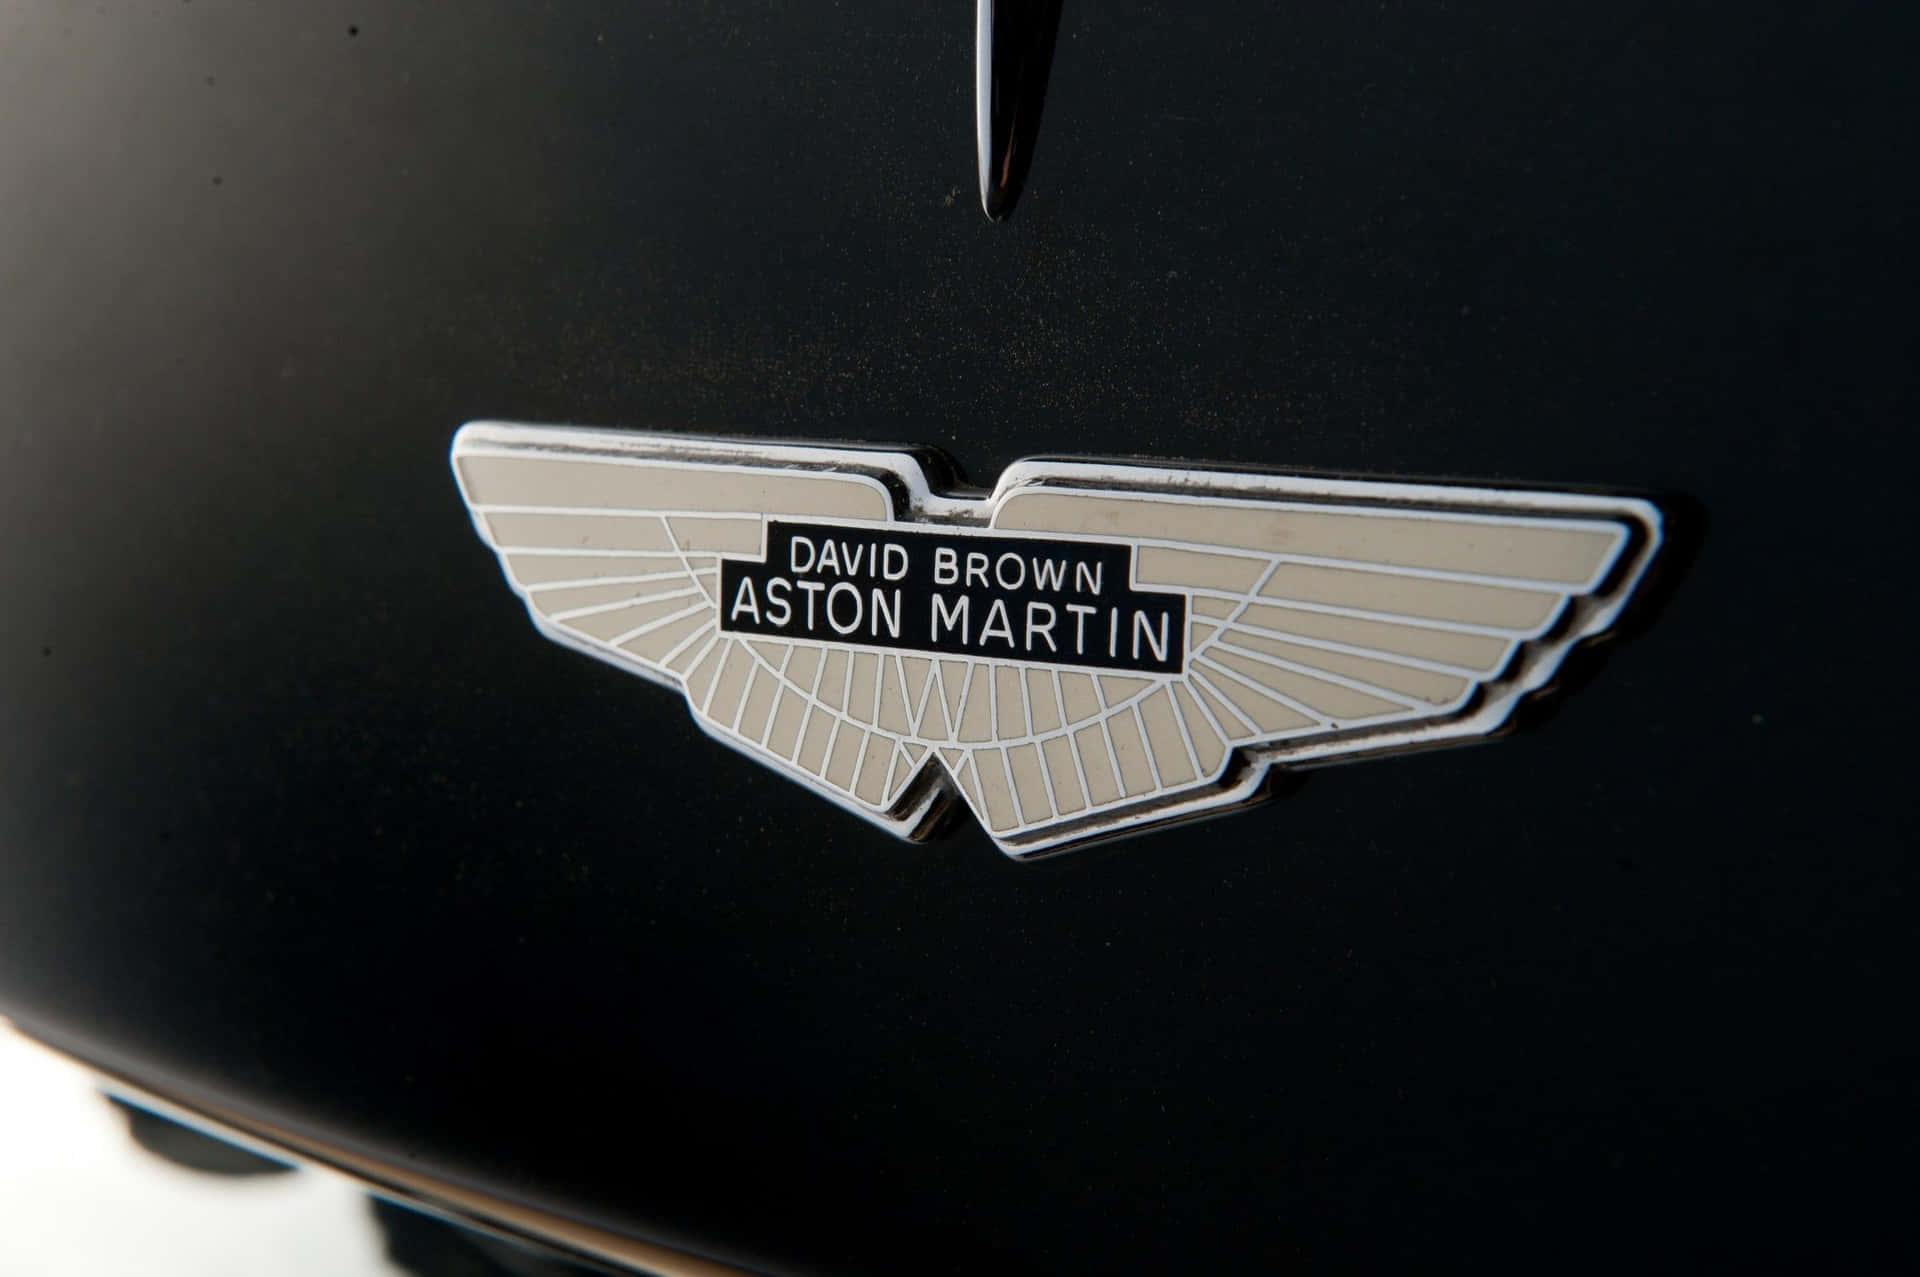 Aston Martin Db9 - Aston Martin Db9 - Aston Martin D